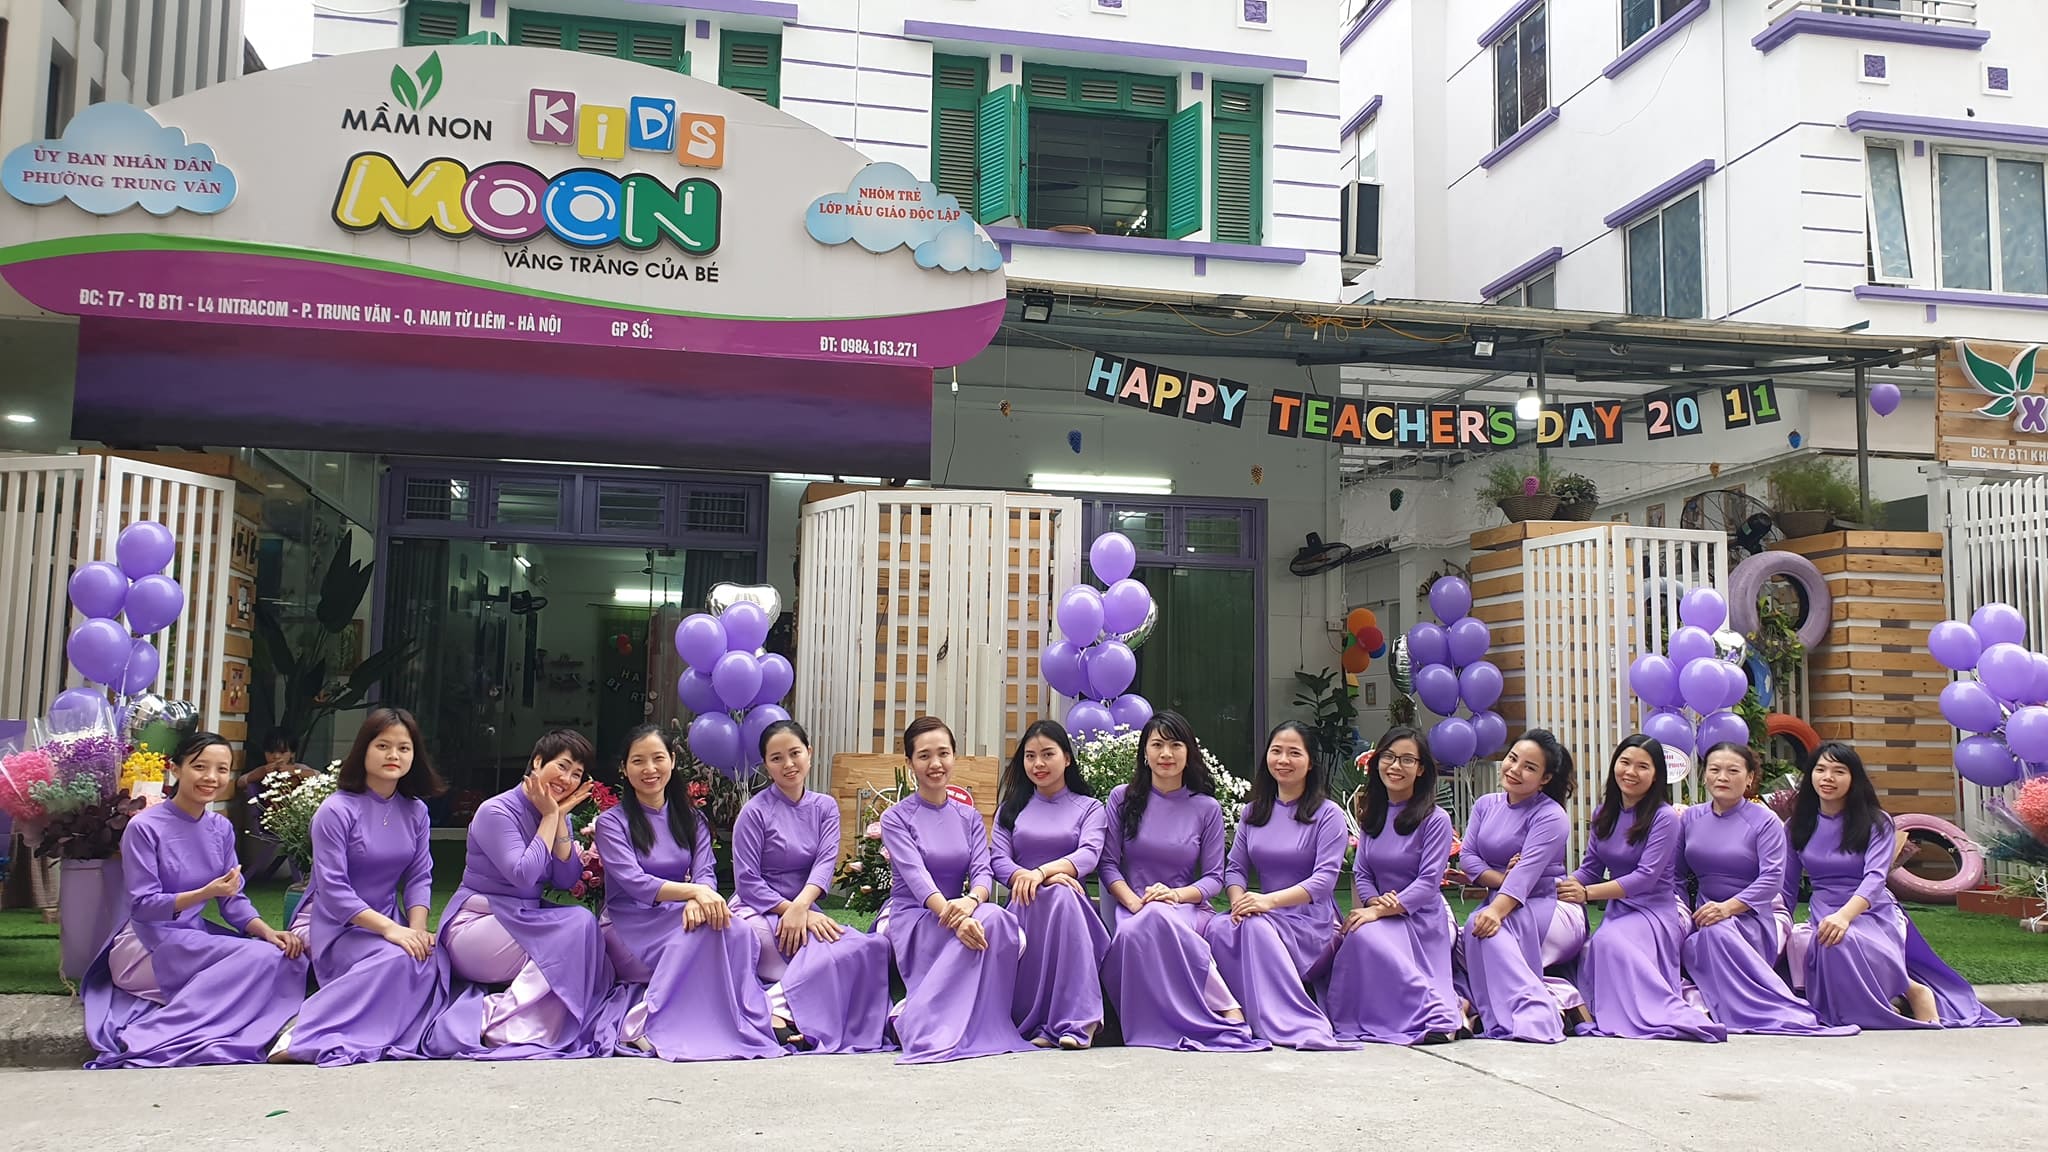 Happy Teacher Day - Mầm Non Kid's Moon